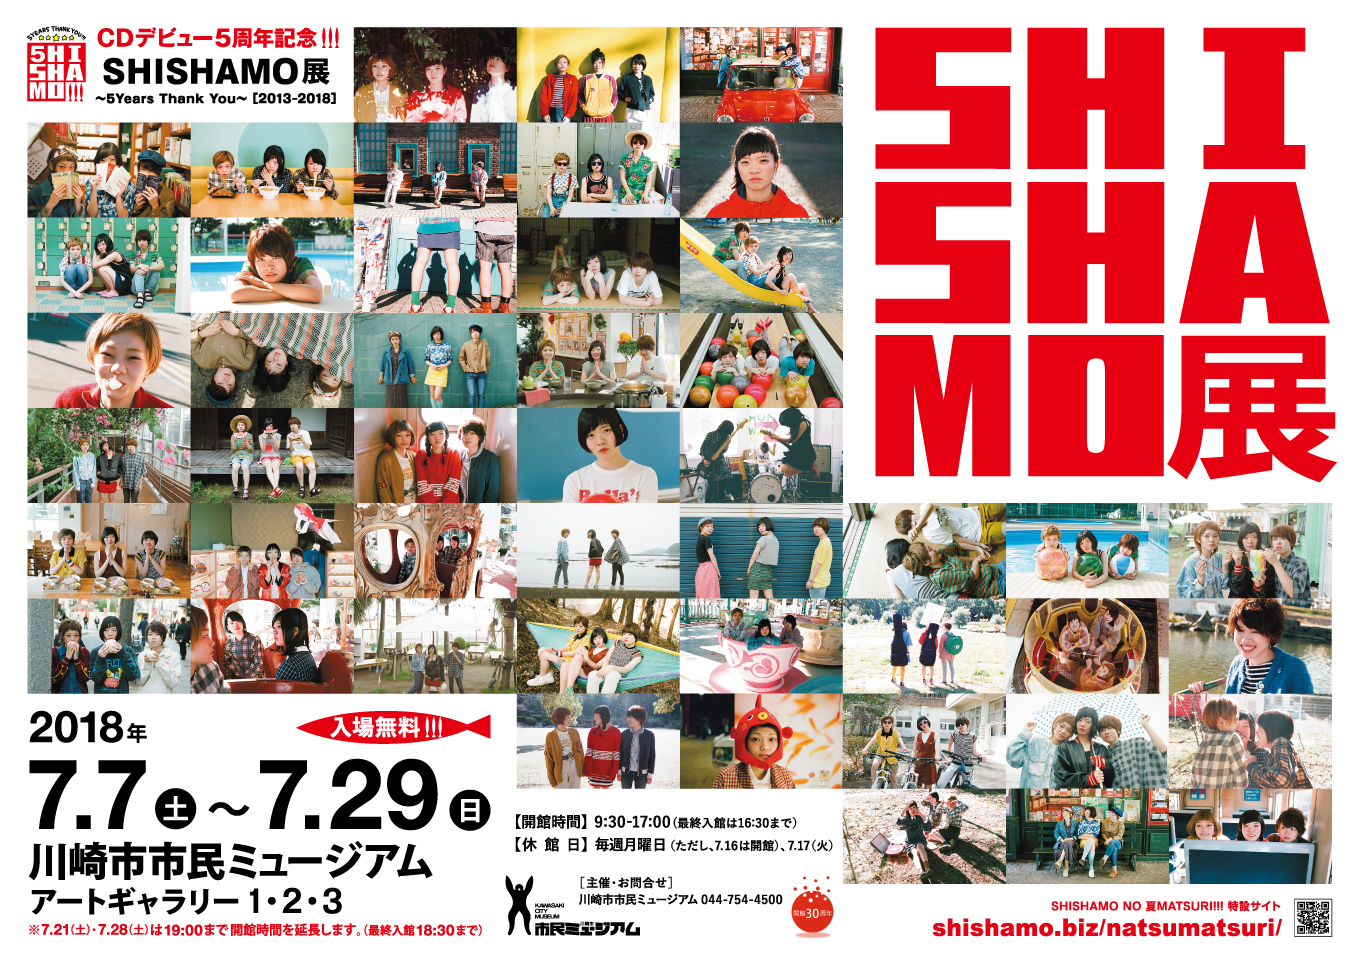 Cdデビュー5周年記念 Shishamo展 5years Thank You 13 18 川崎市市民ミュージアム